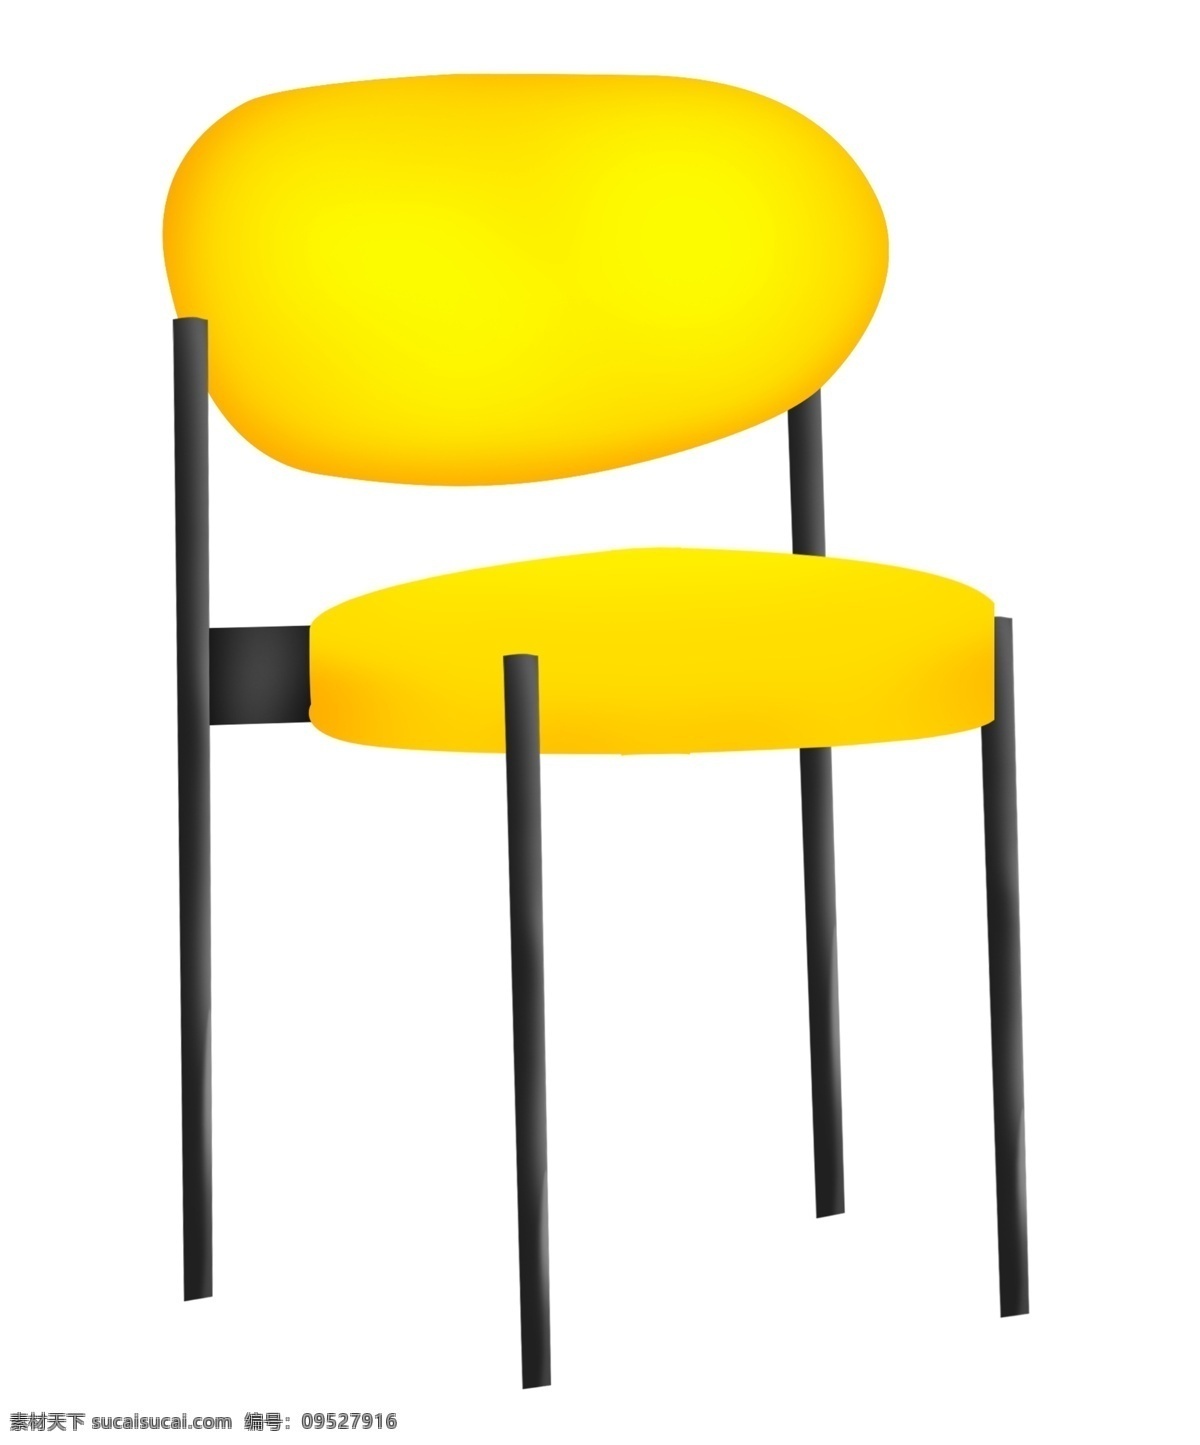 黄色 家具 椅子 插画 黄色的椅子 黄色的家具 卡通插画 家具插画 椅子插画 精美椅子 精美家具